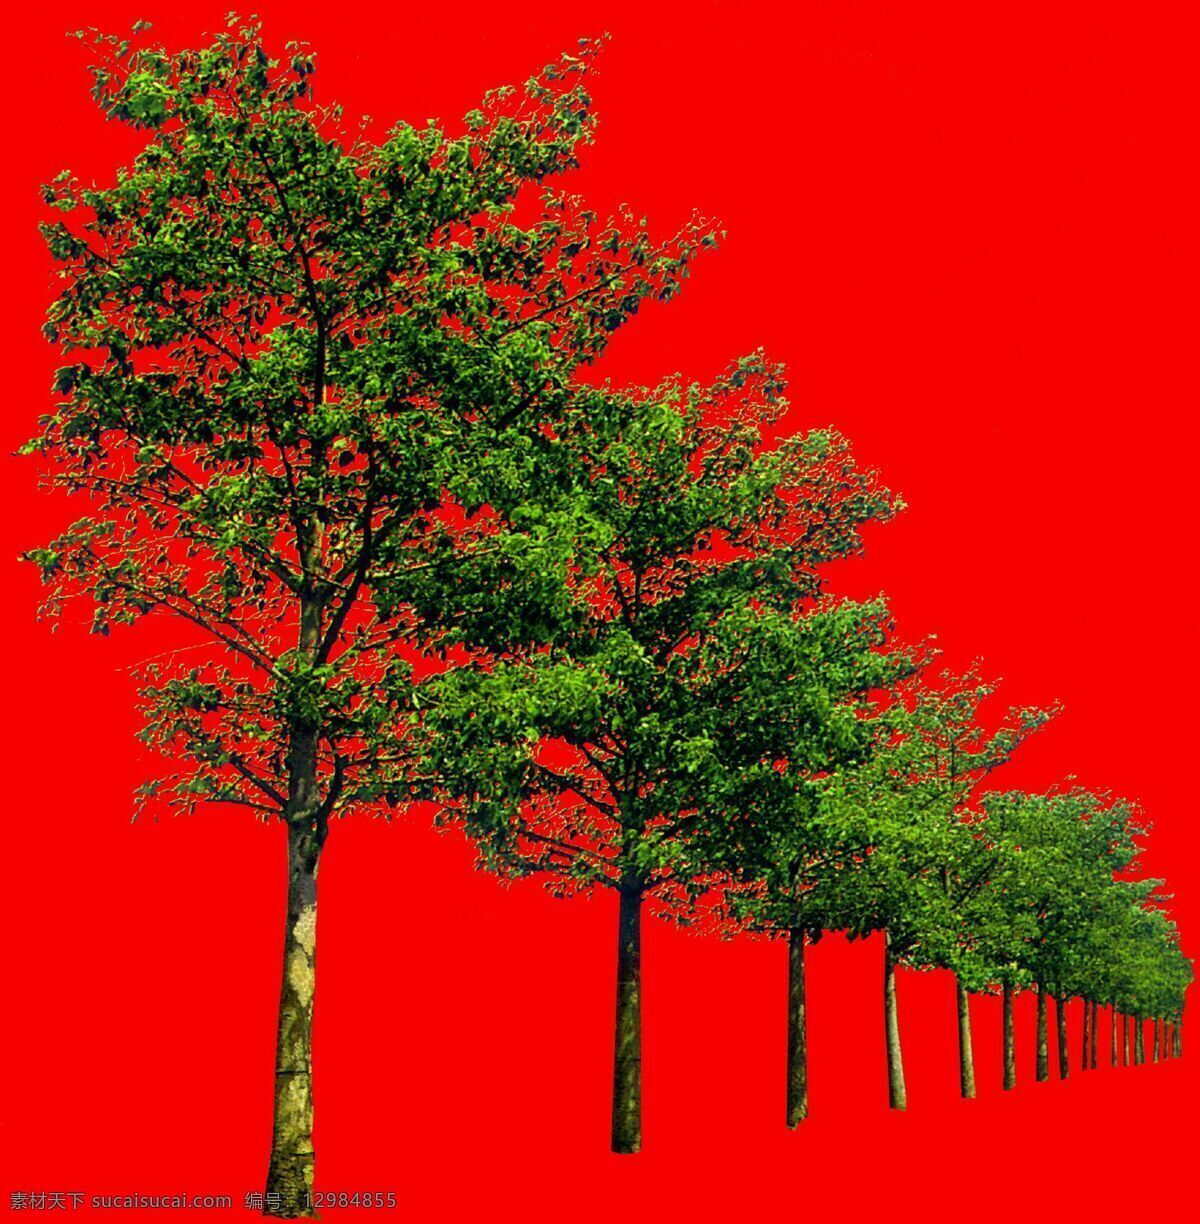 树丛 贴图素材 建筑装饰 设计素材 植物 红色